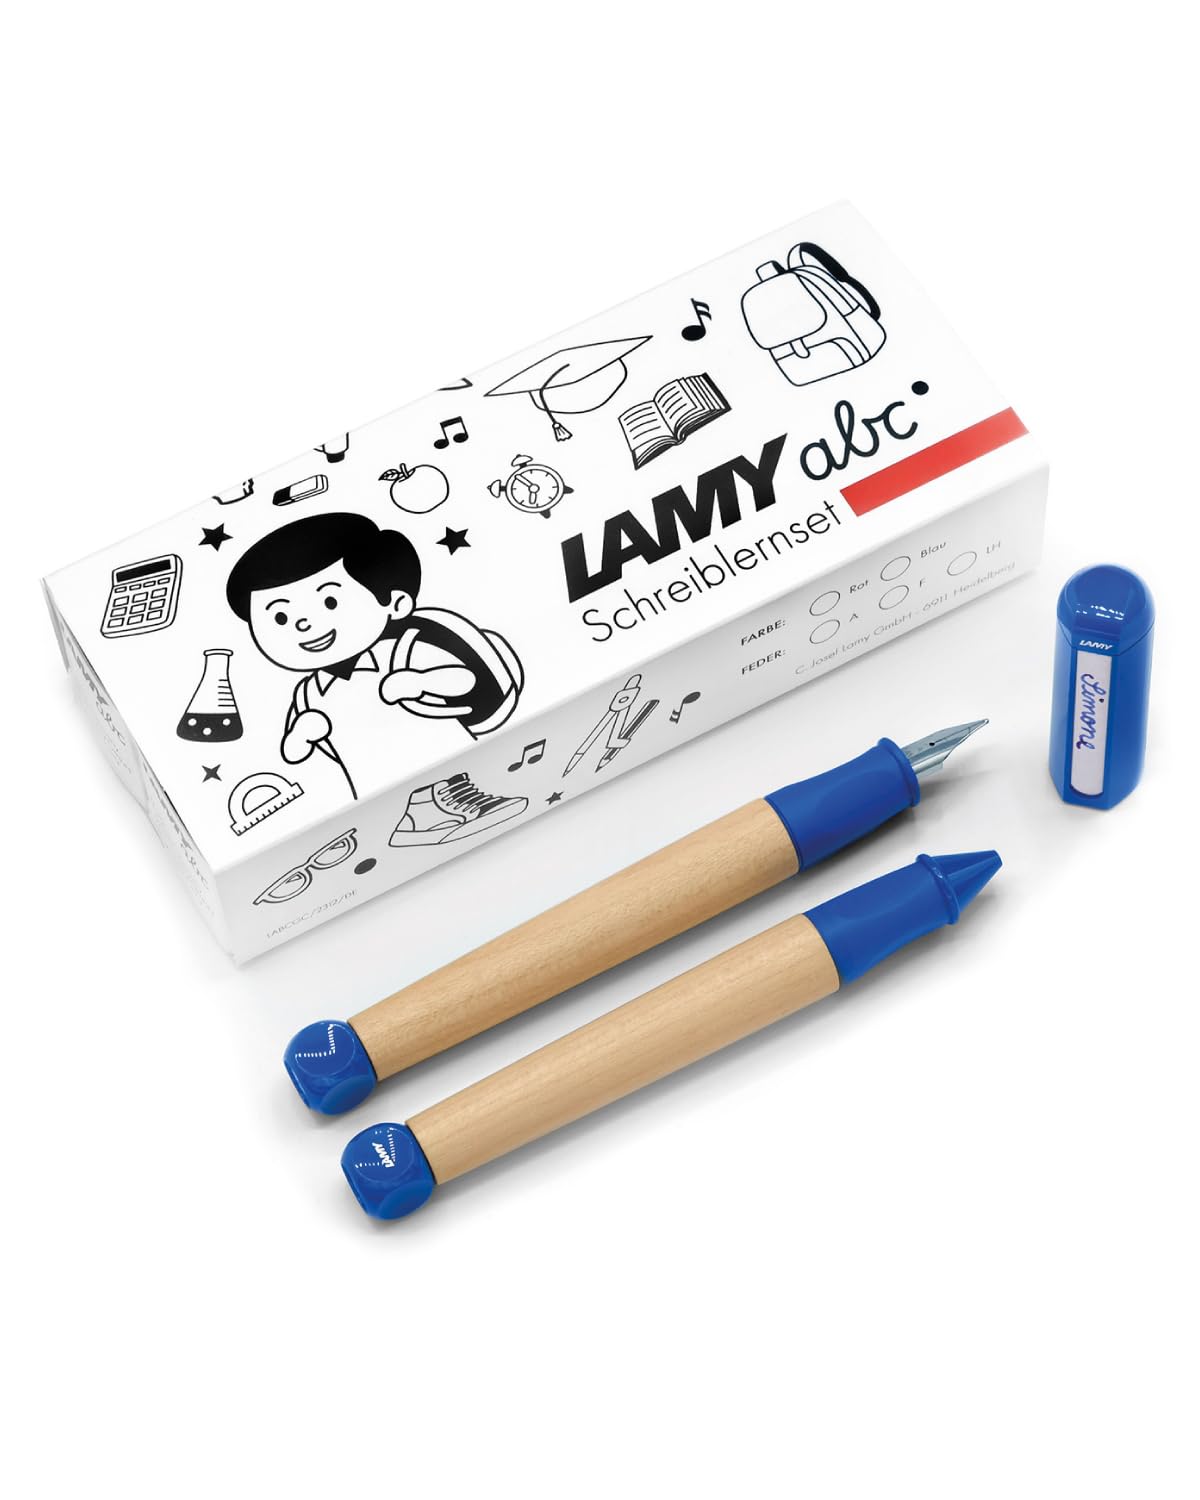 LAMY abc Schreiblernset blau inkl. Geschenkverpackung aus 1x kindgerechtem Schreiblernfüller mit Anfänger Feder und 1x Bleistift, rutschfestes Griffstück, Kappe und Würfel aus Kunststoff